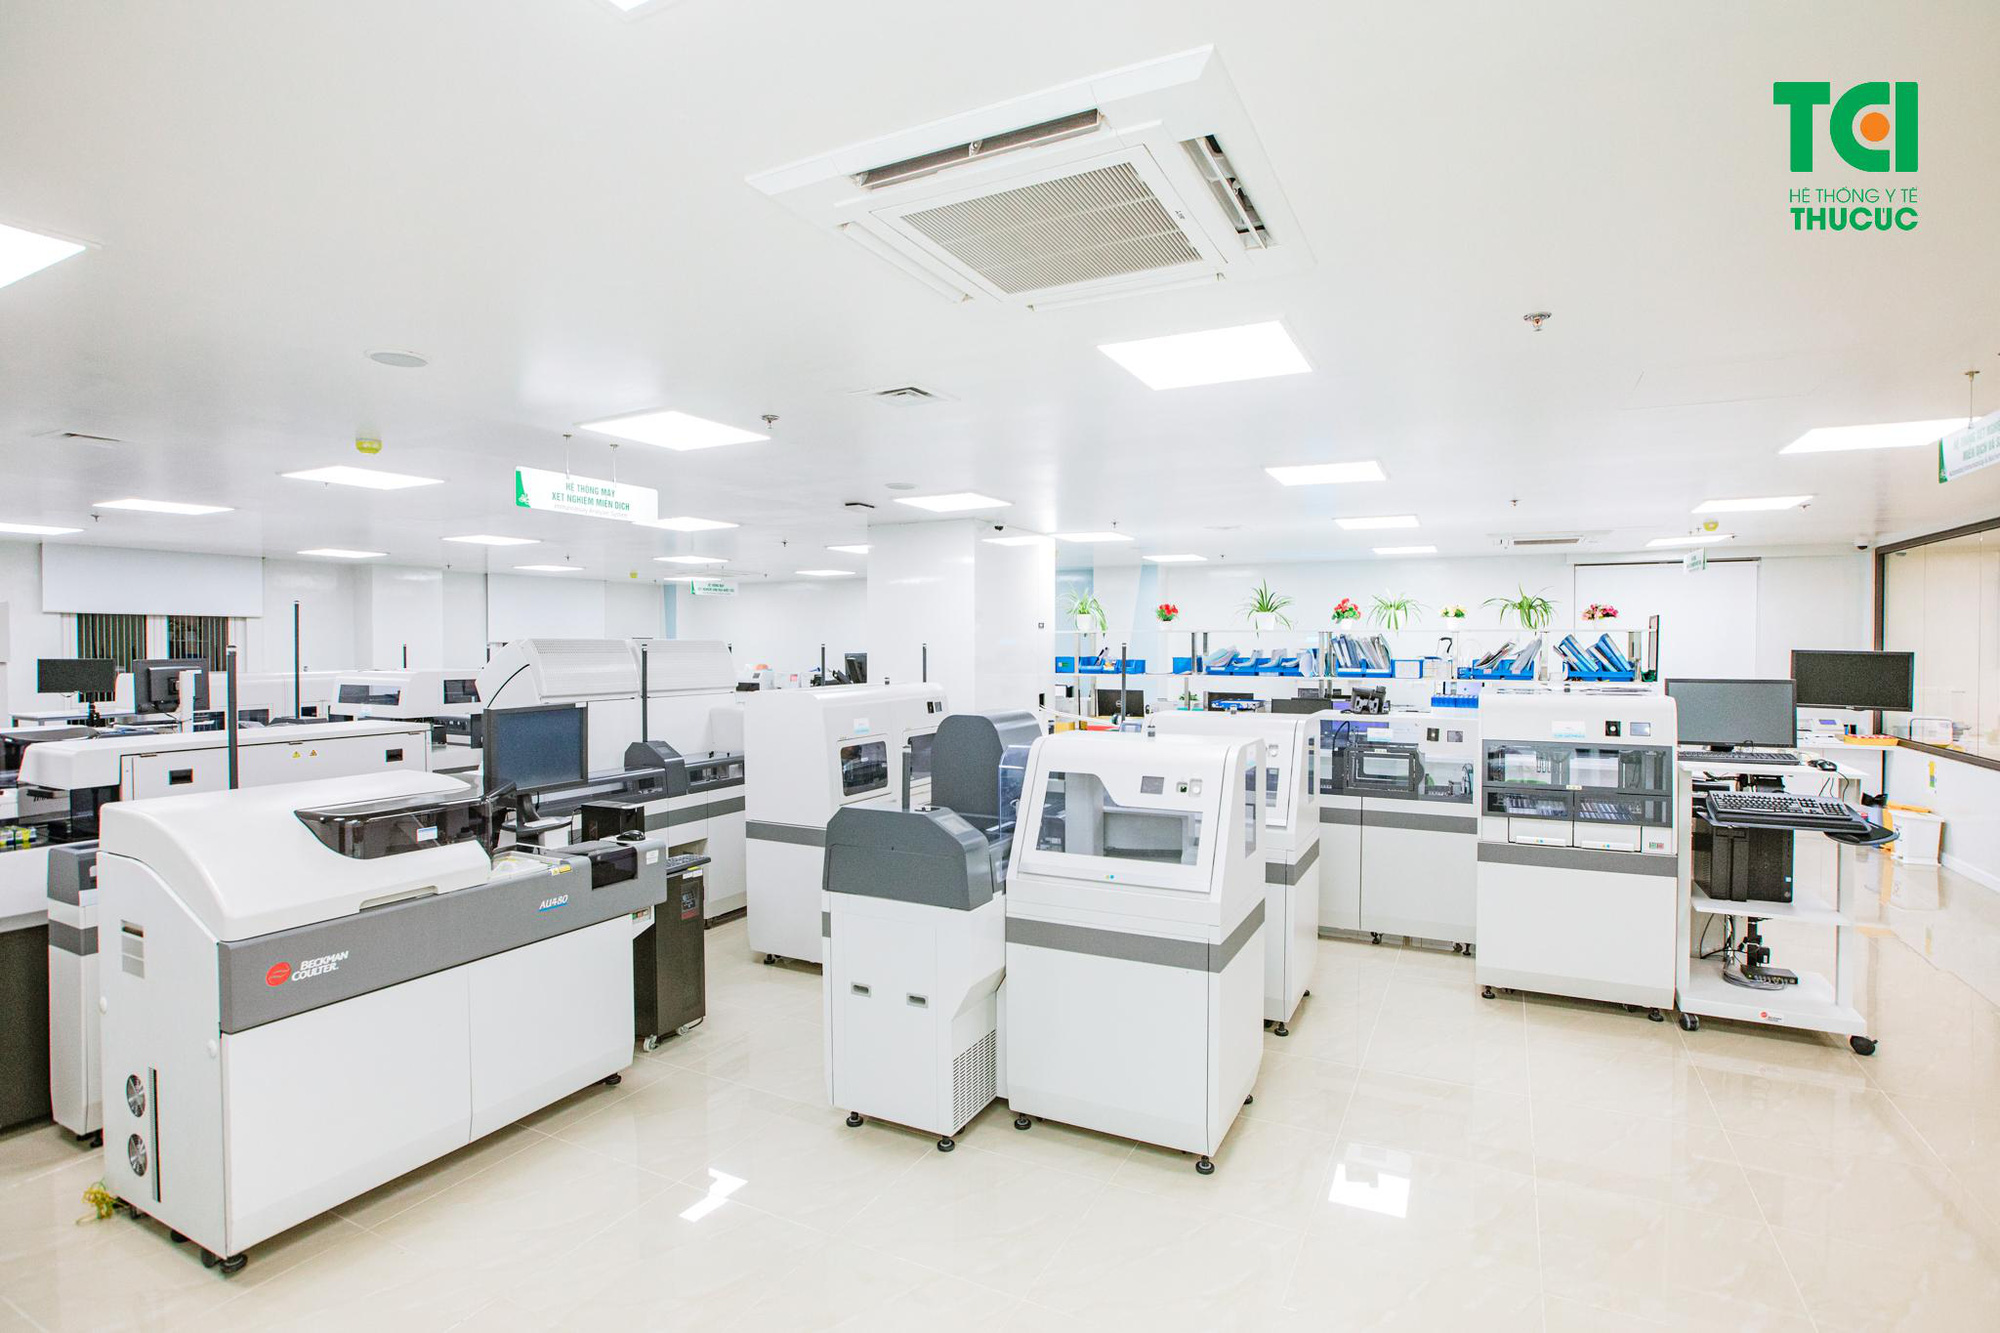 Hệ thống y tế sở hữu các cơ sở có quy mô lớn tại Hà Nội - Ảnh 4.